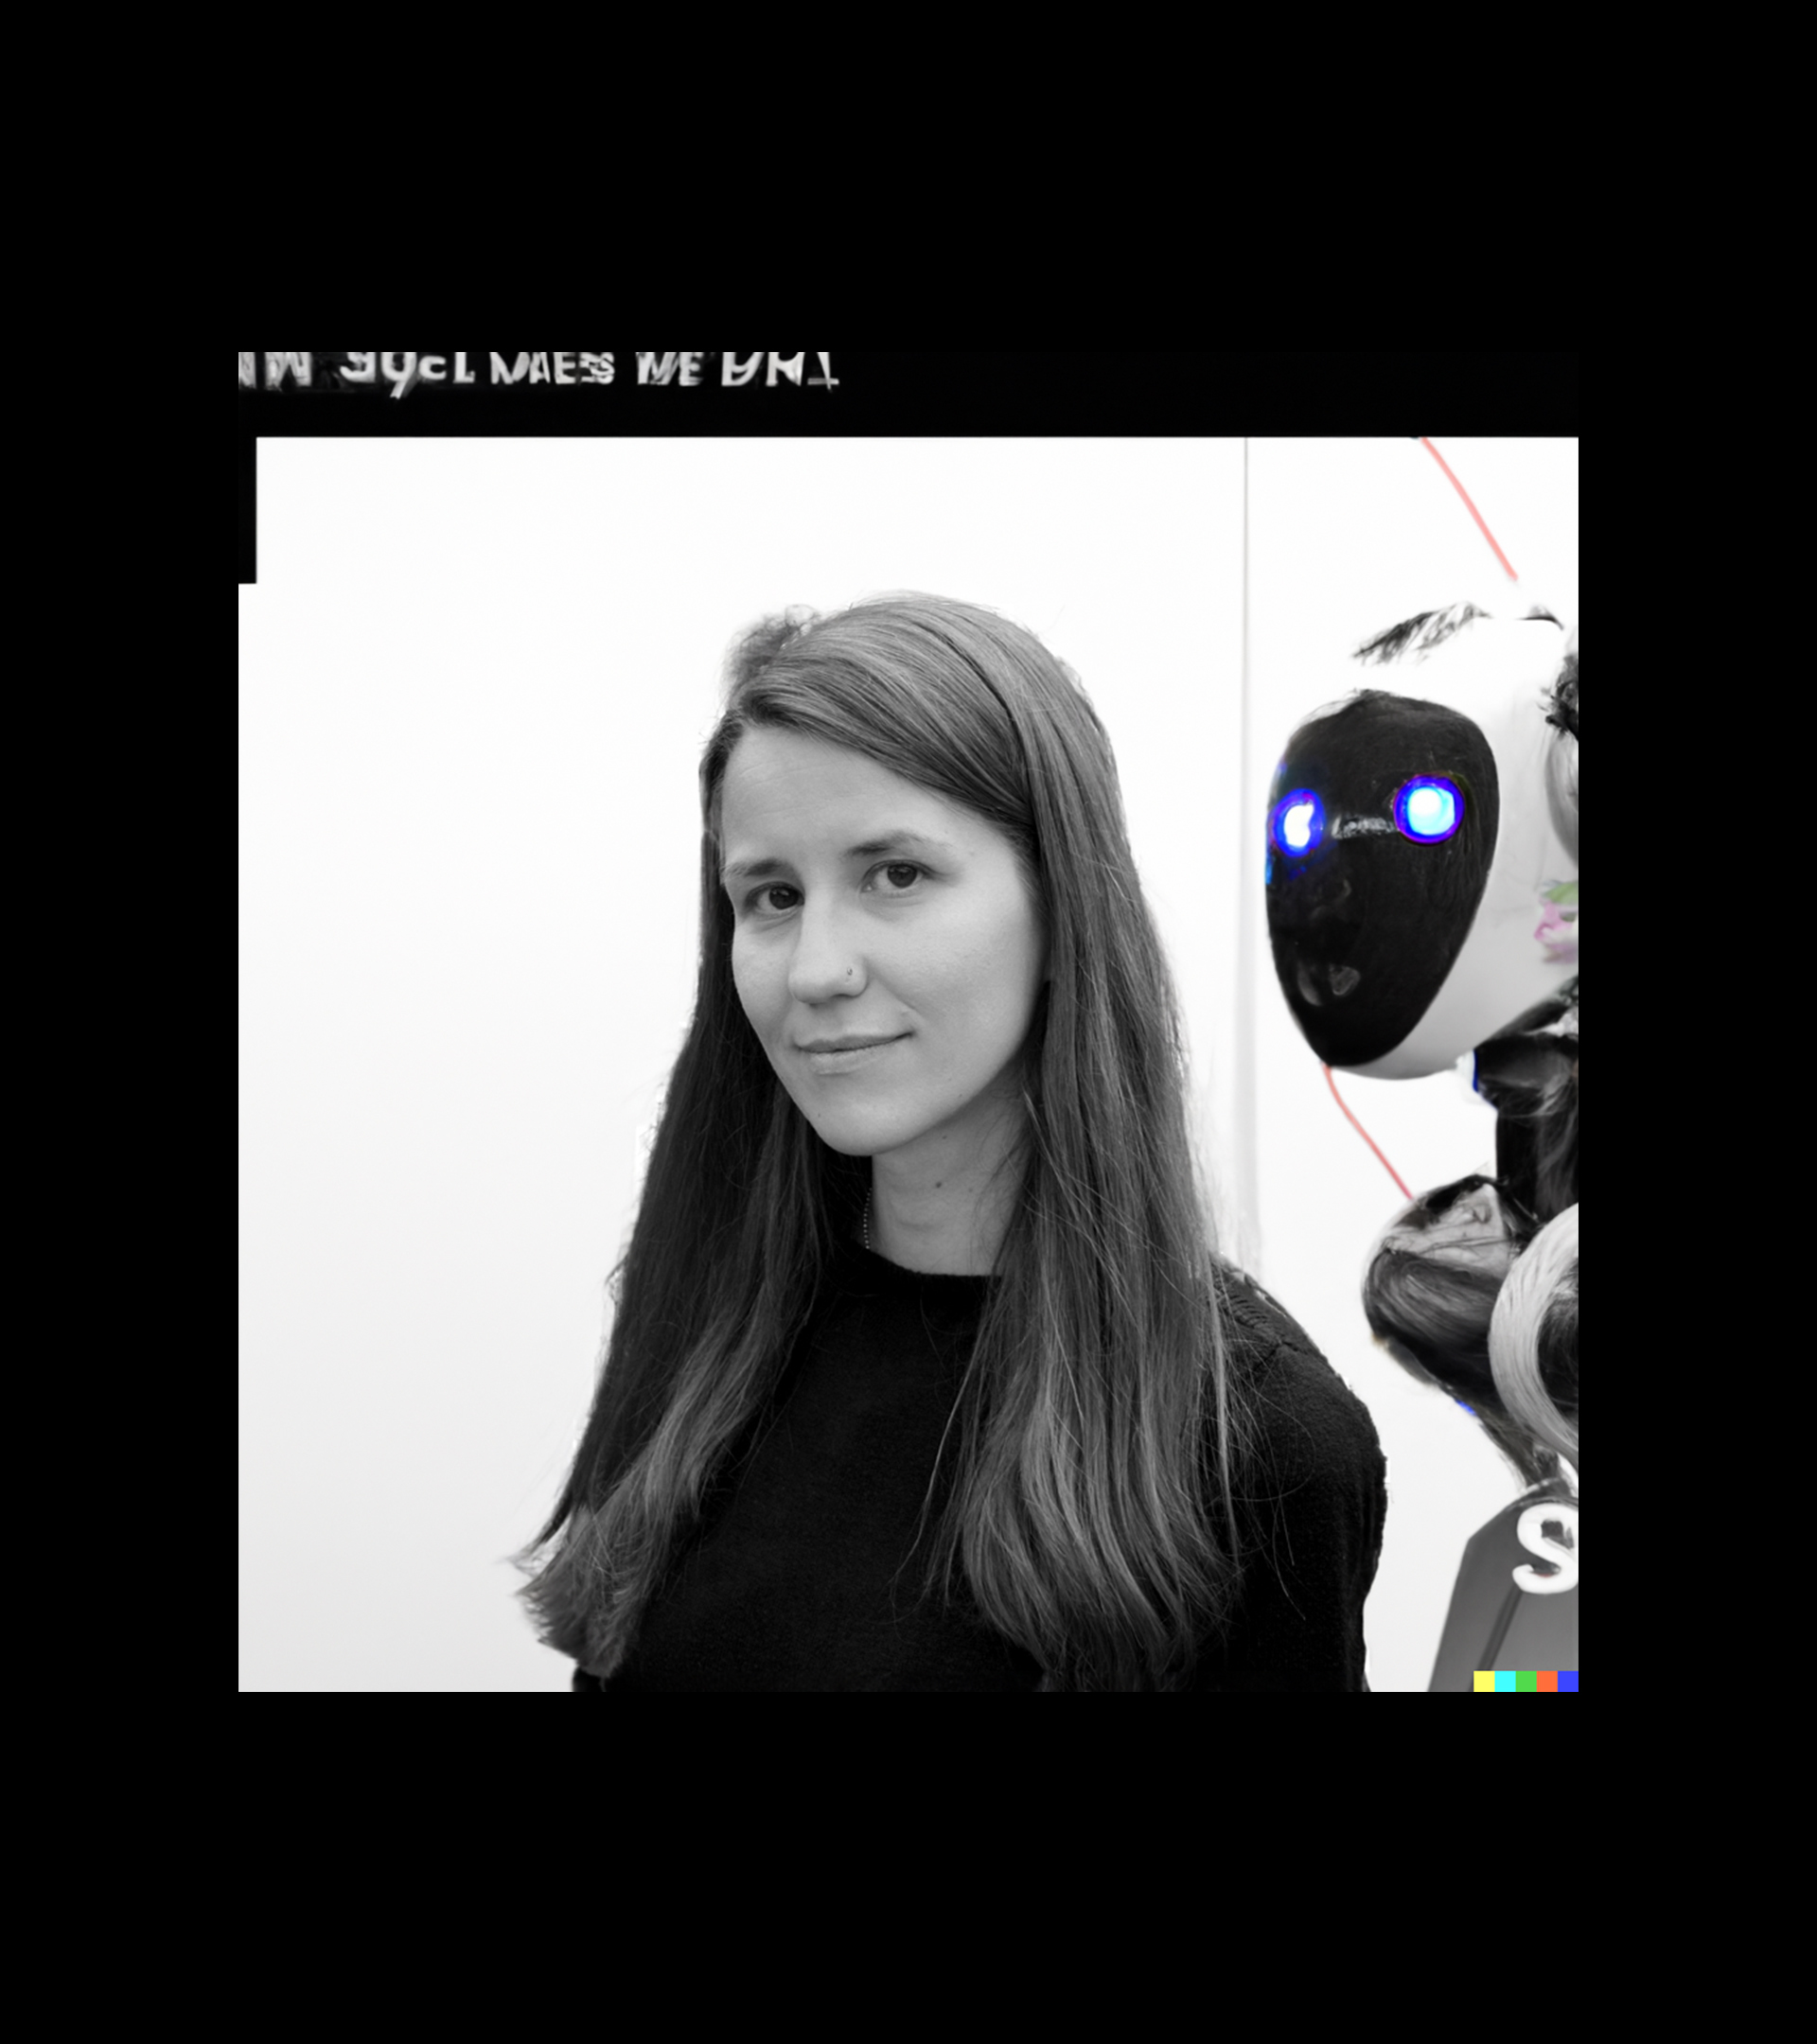 Tras subir una fotogafa de la profesora Sandra Wachter, le pedimos al programa de IA Dall.E una imagen para ilustrar esta entrevista. En realidad, no investiga a los robots, sino datos y algoritmos.